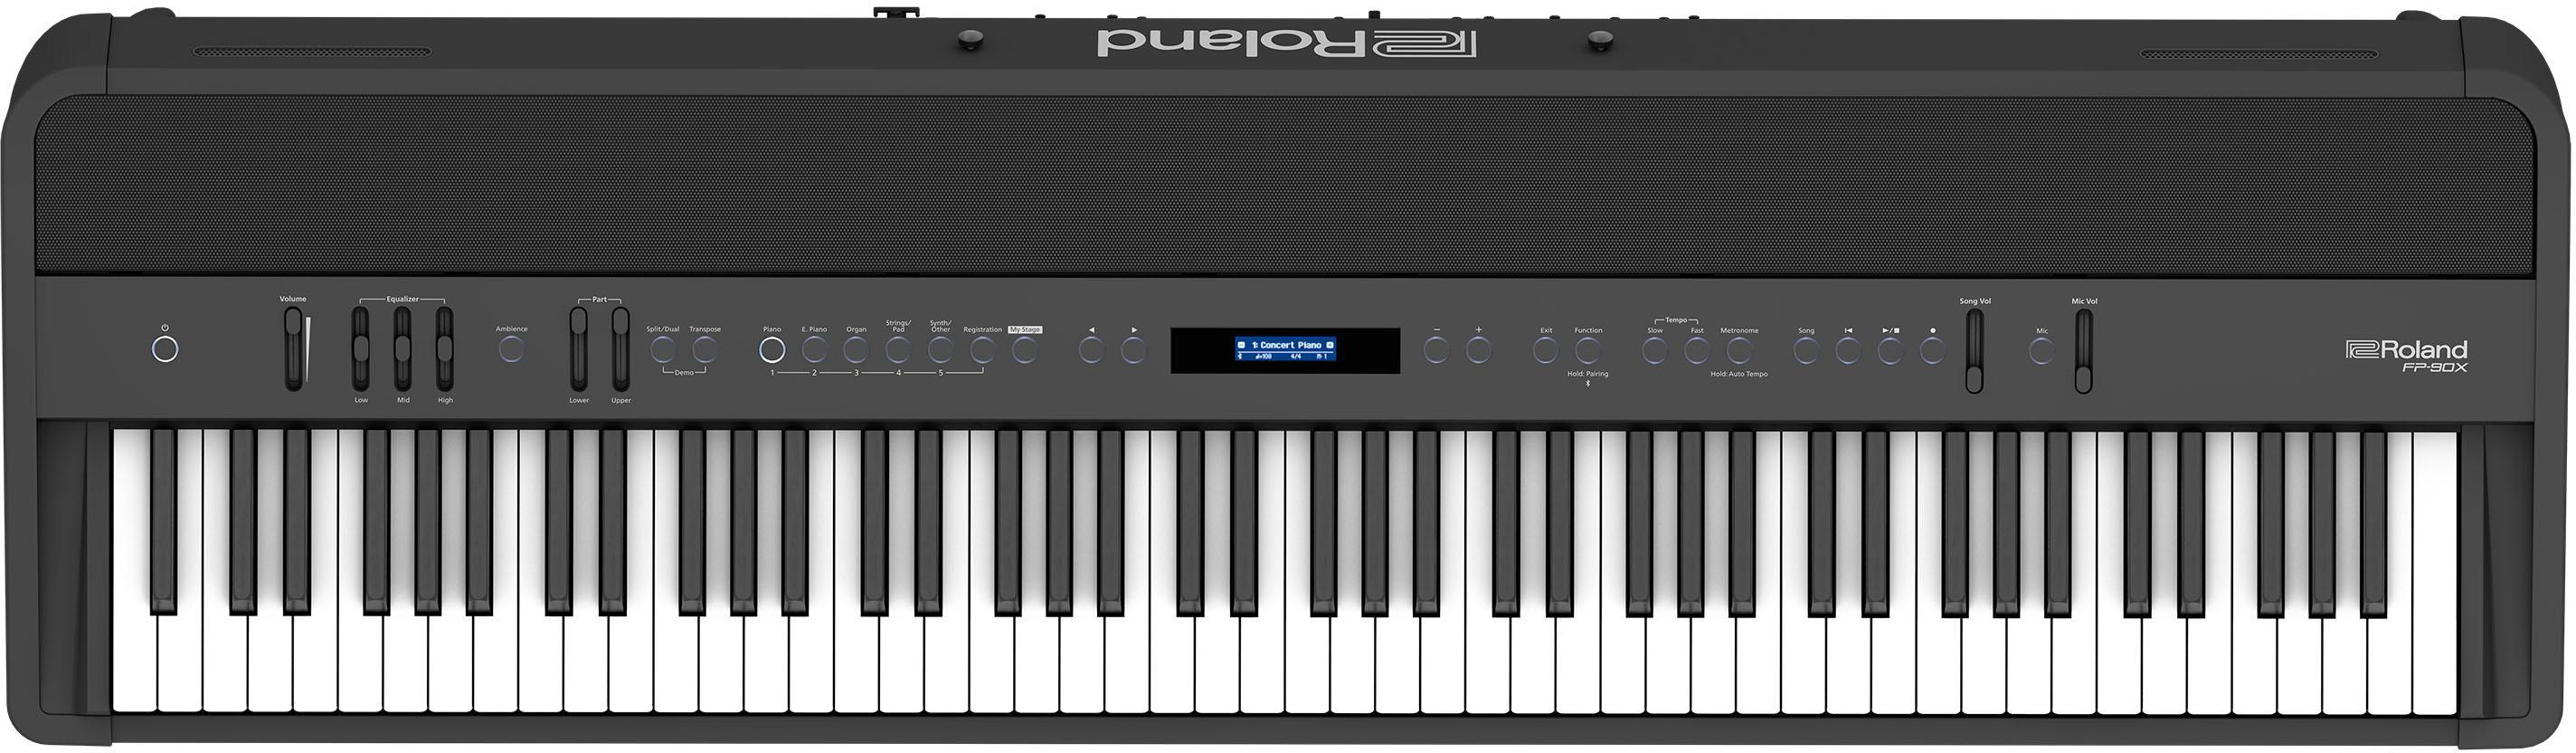 Piano digital portatil Roland FP-90X BK